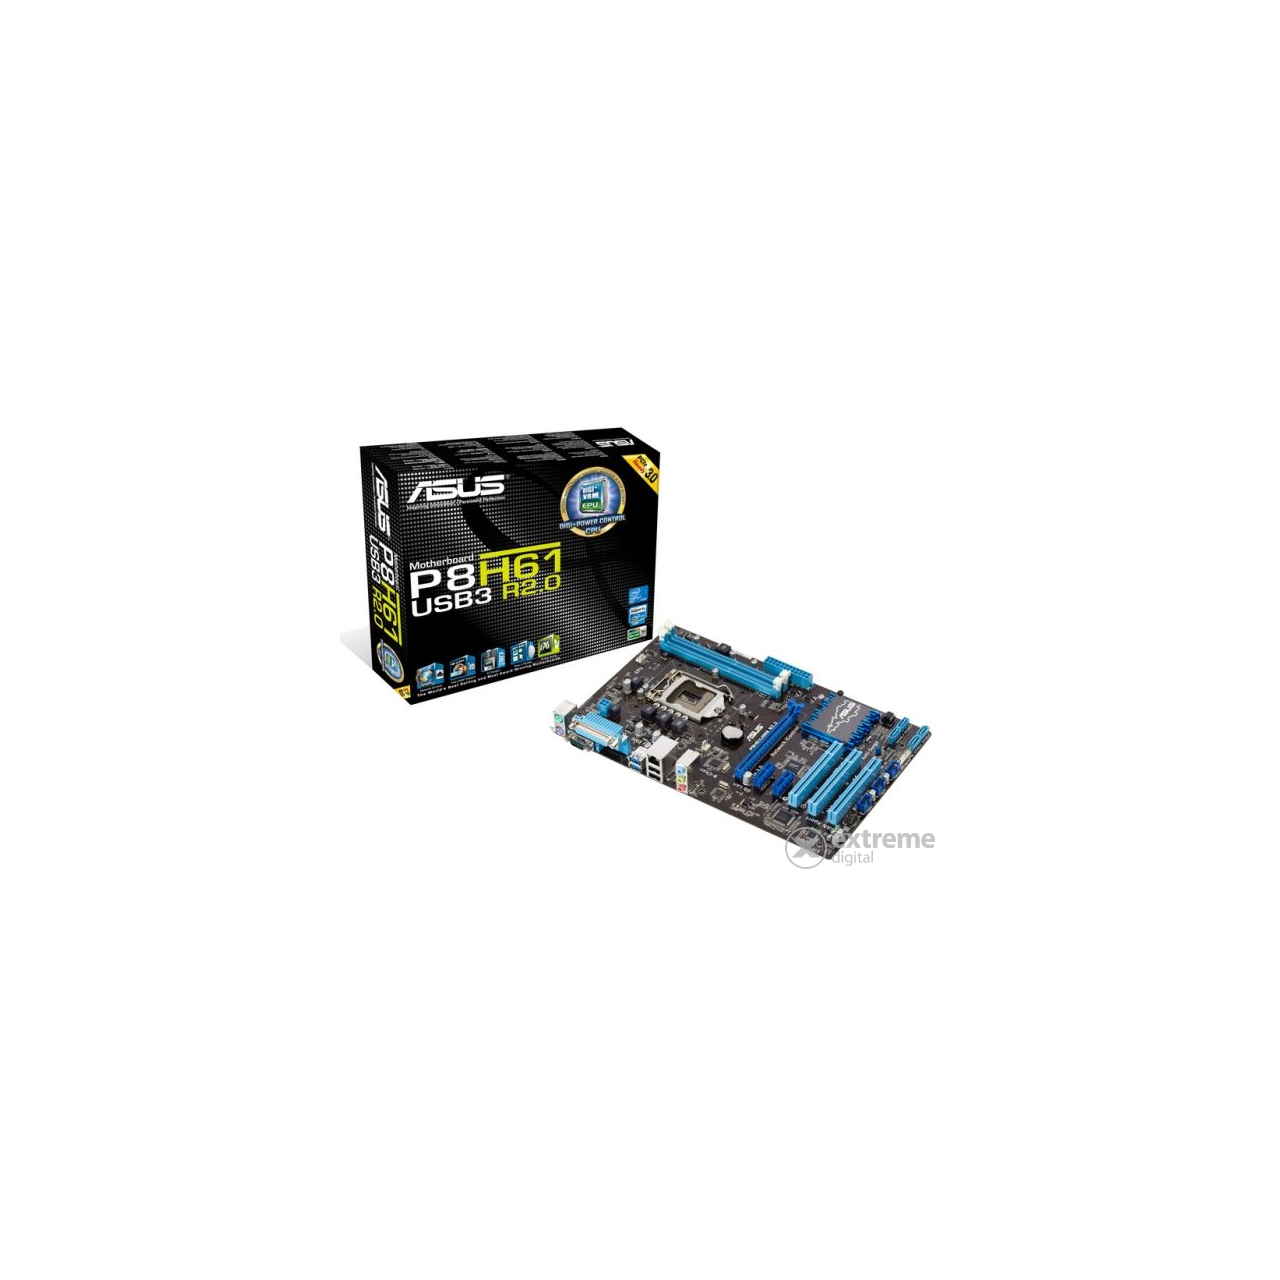 Asus P8H61/USB3 R2.0 Intel H61